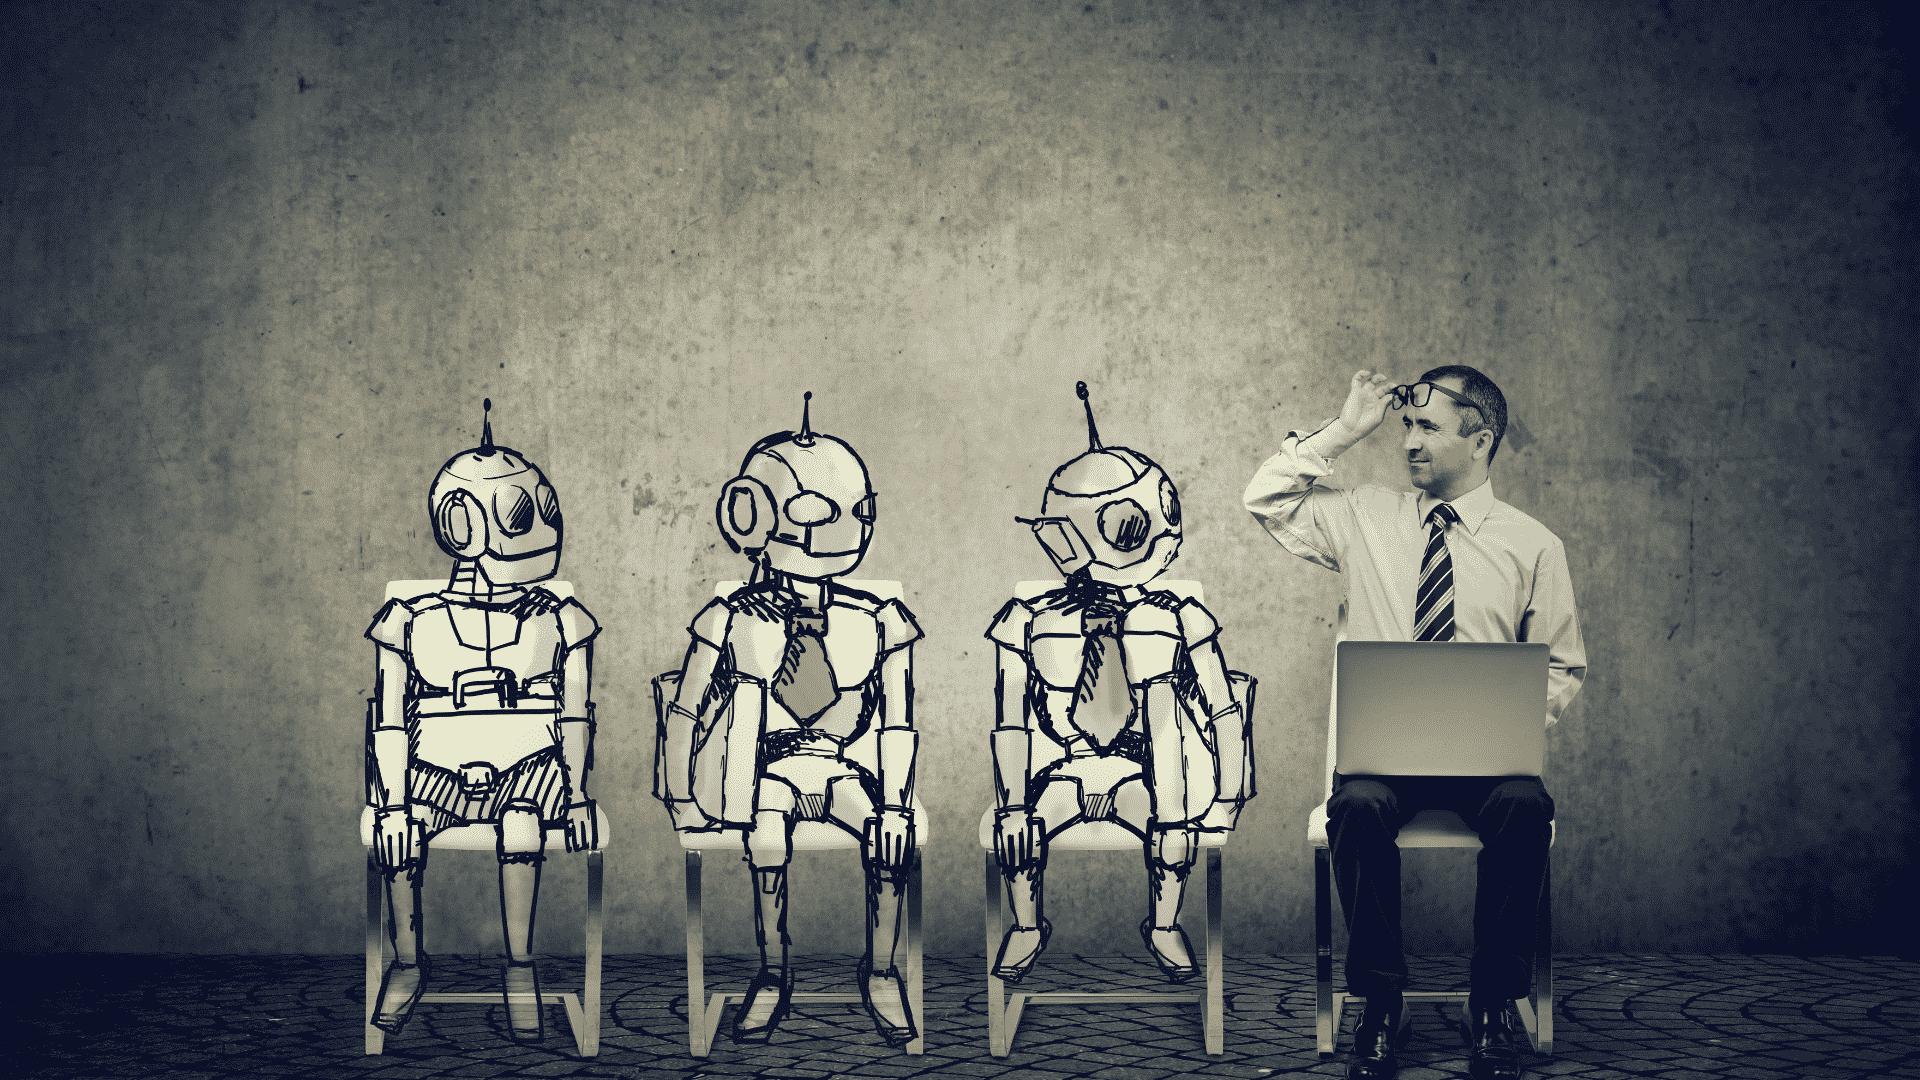 Imagem ilustrativa de um humano olhando para robôs